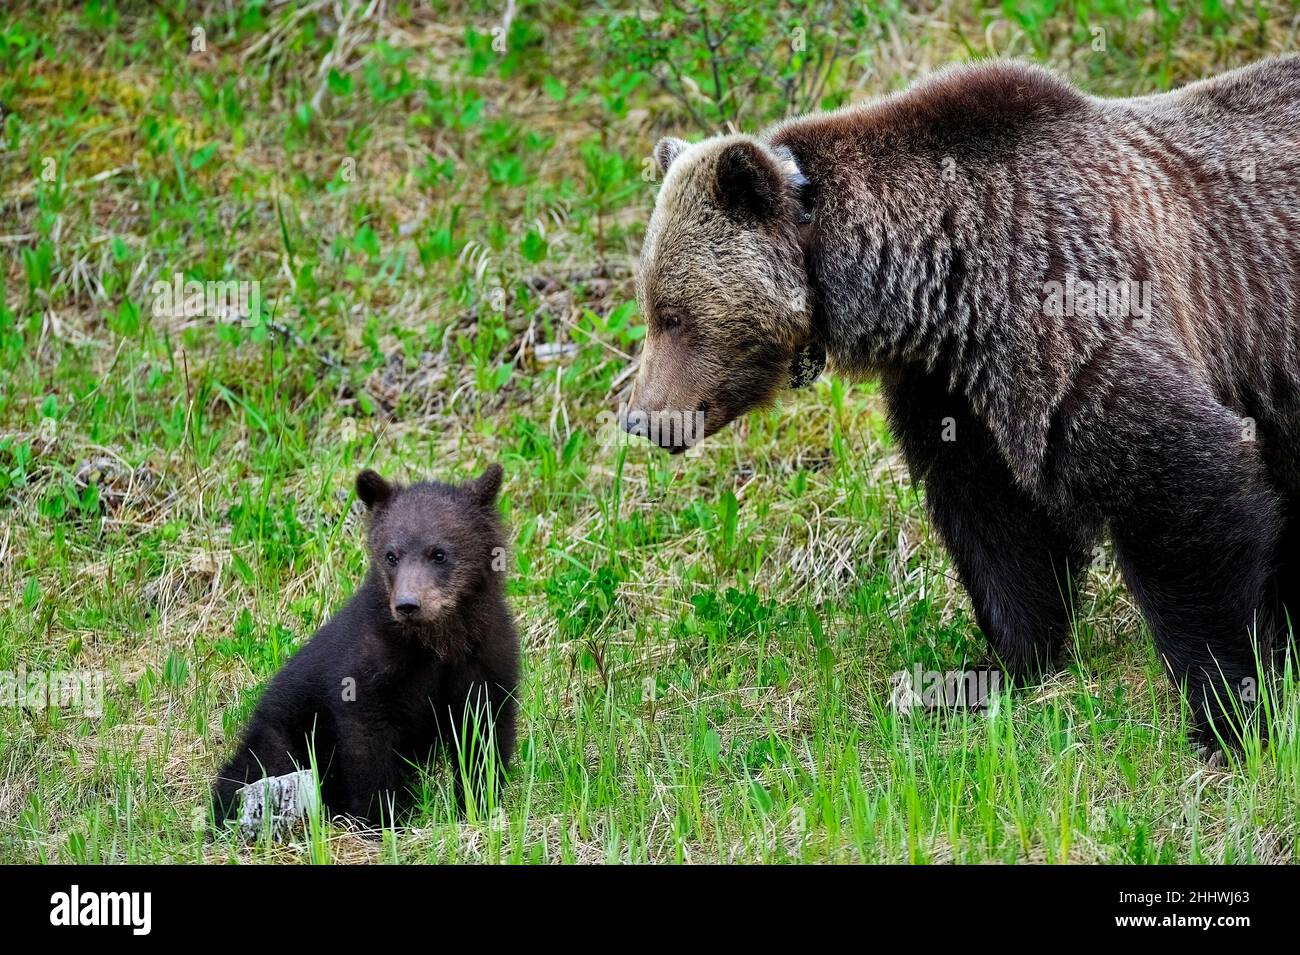 Eine wilde Grizzlybärmutter mit einem jungen Jungen (Ursus arctos), die in der neuen Vegetation im ländlichen Alberta Kanada auf Nahrungssuche ist. Stockfoto